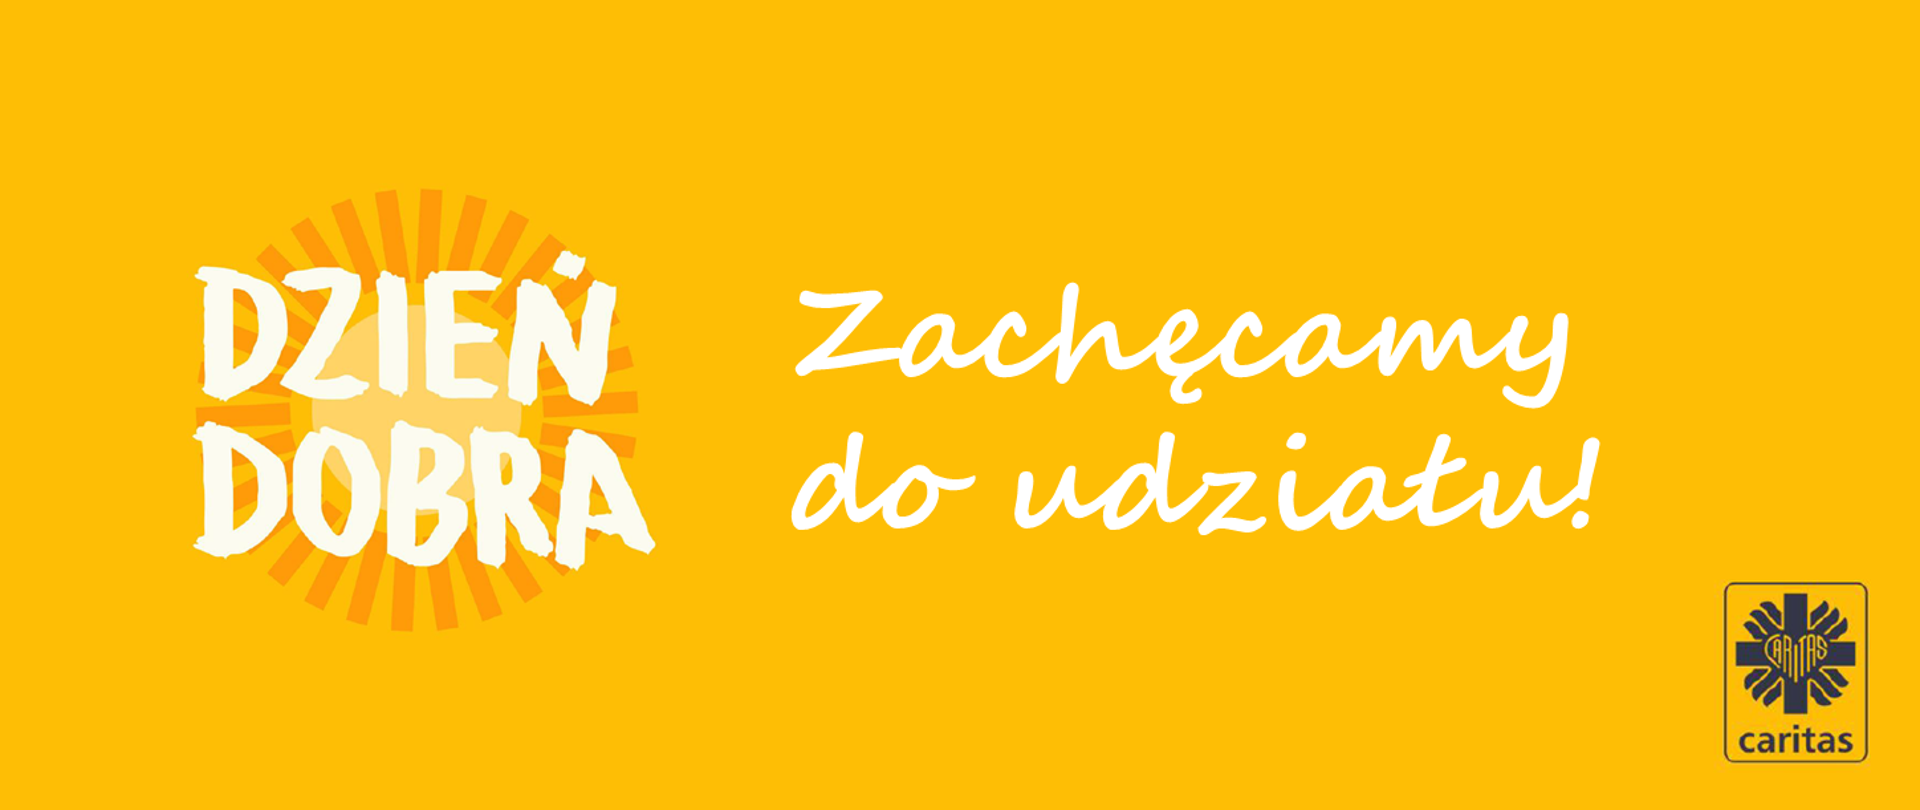 Grafika - na żółtym tle napis Dzień Dobra na pomarańczowym słońcu, w prawym dolnym rogu logo Caritas.